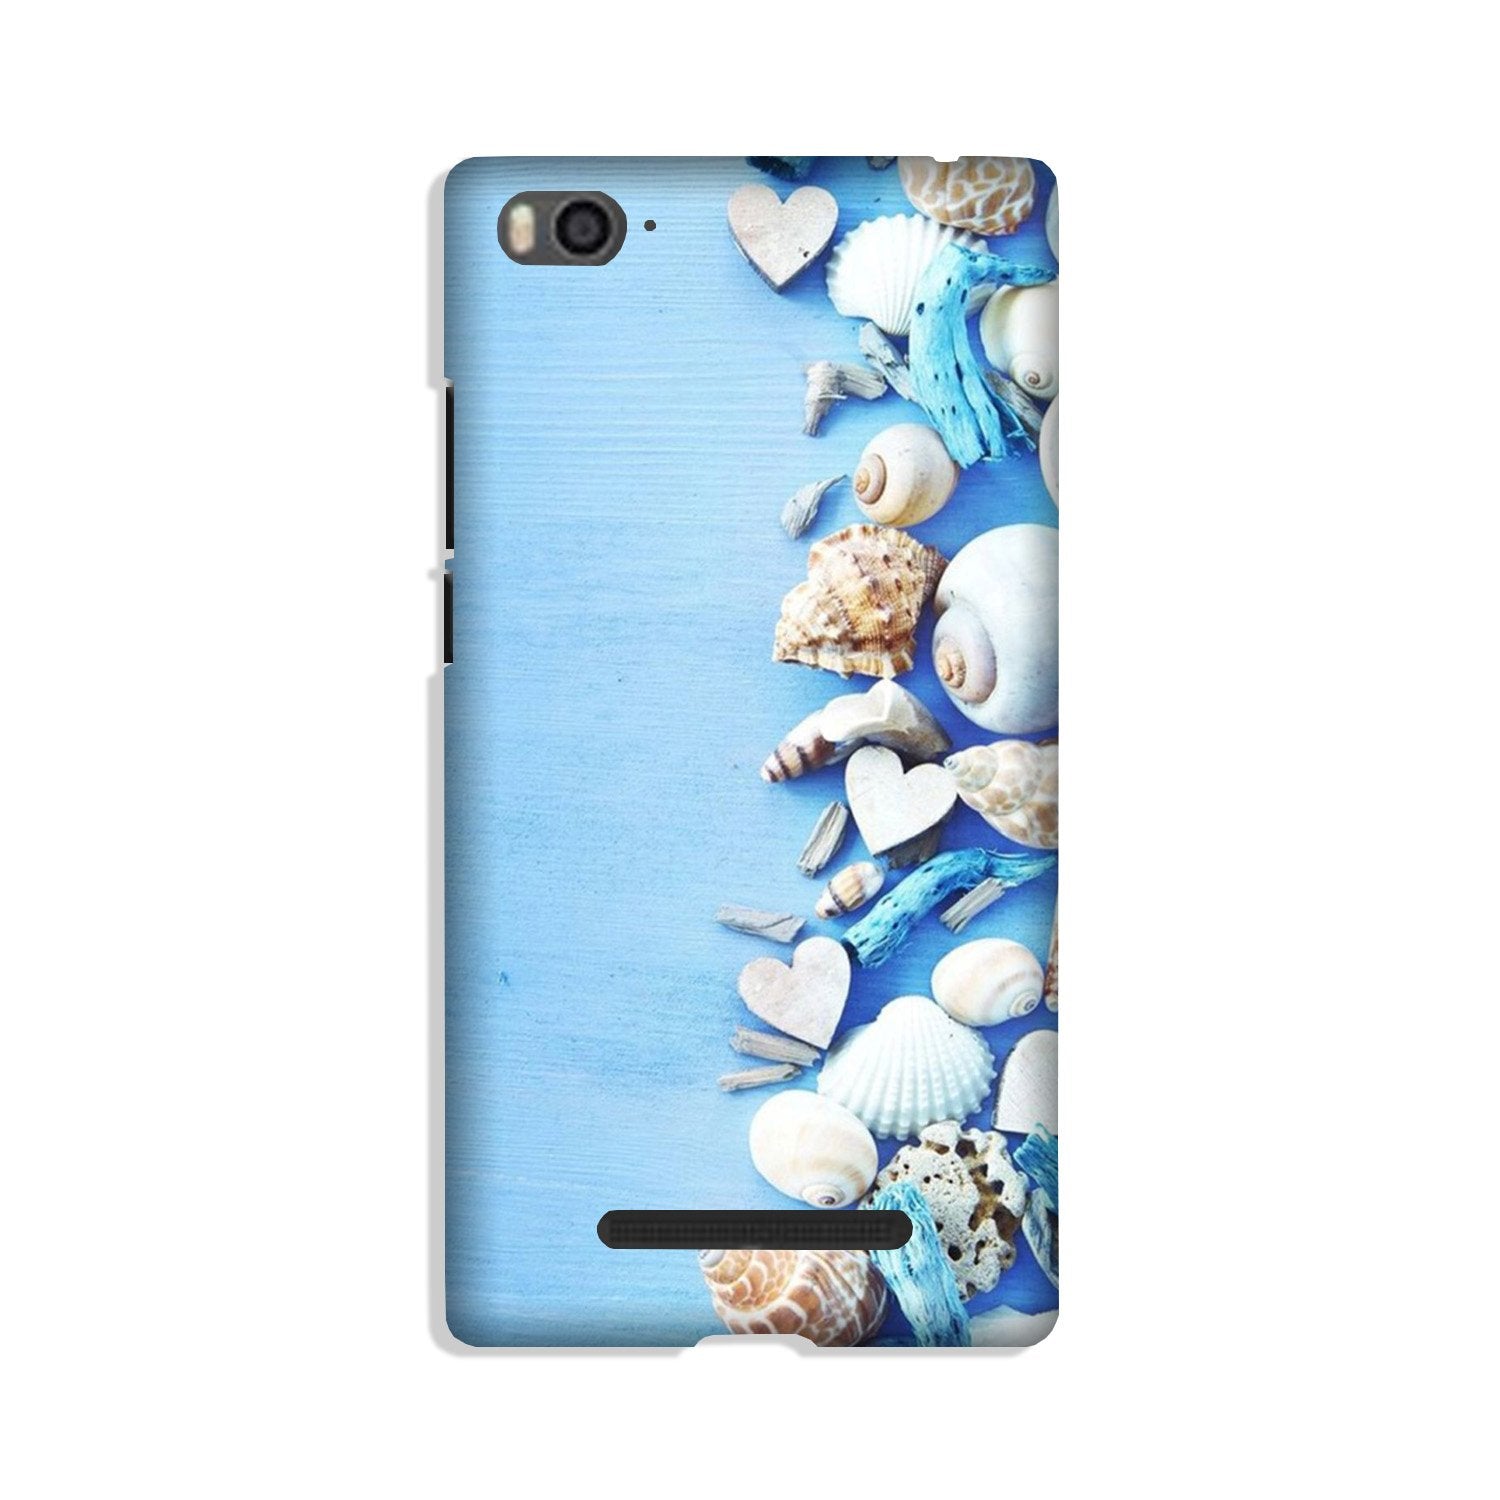 Sea Shells2 Case for Xiaomi Redmi 5A